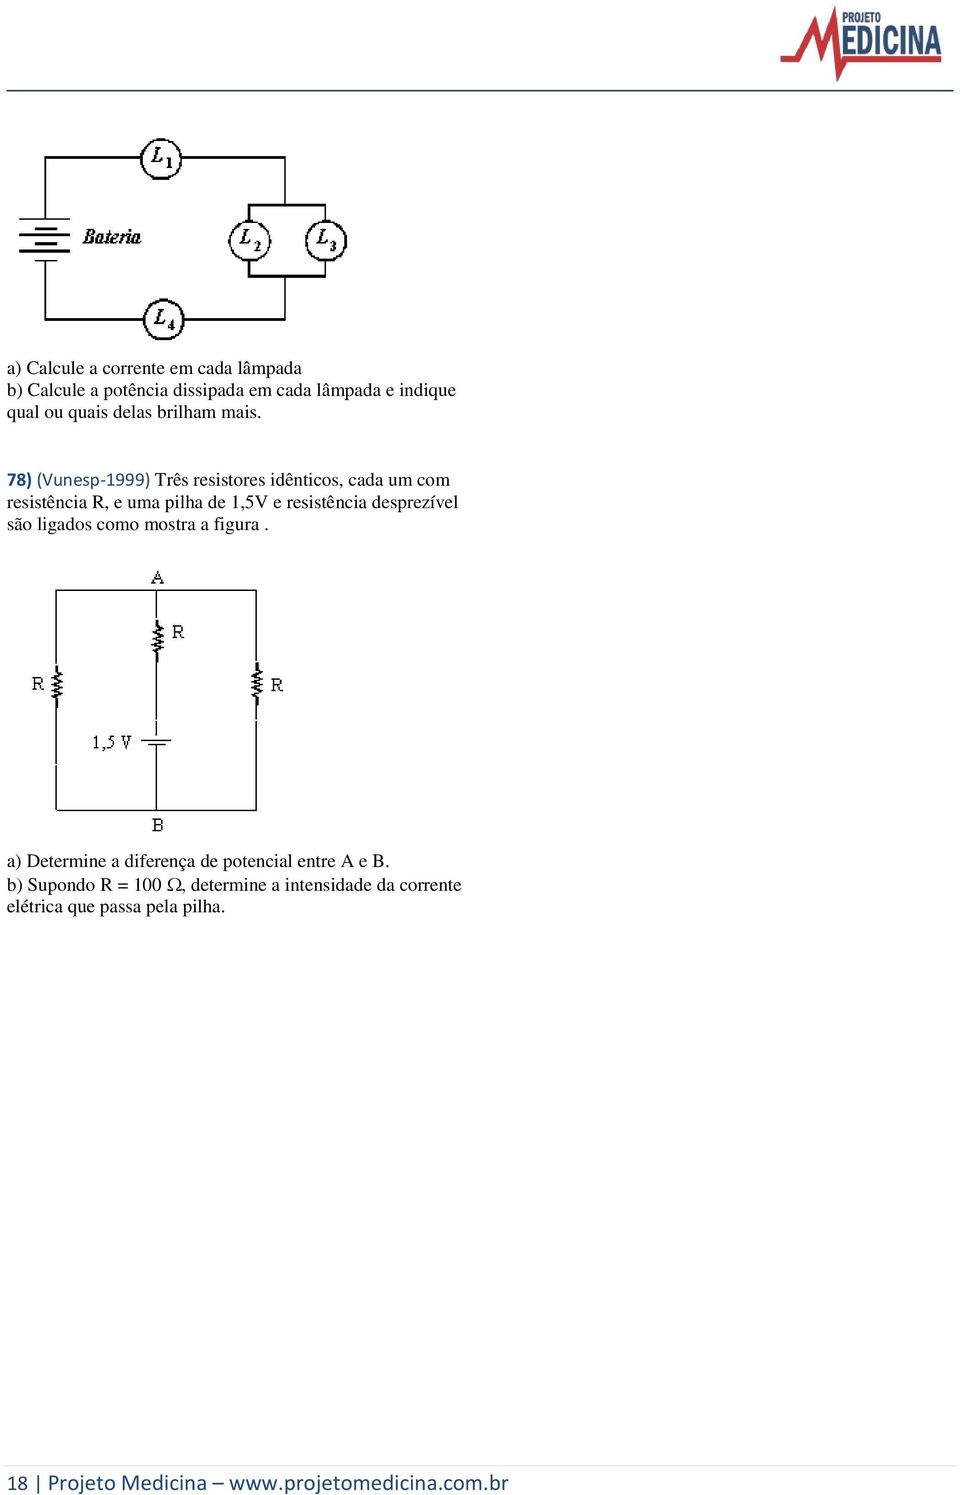 78) (Vunesp-1999) Três resistores idênticos, cada um com resistência R, e uma pilha de 1,5V e resistência